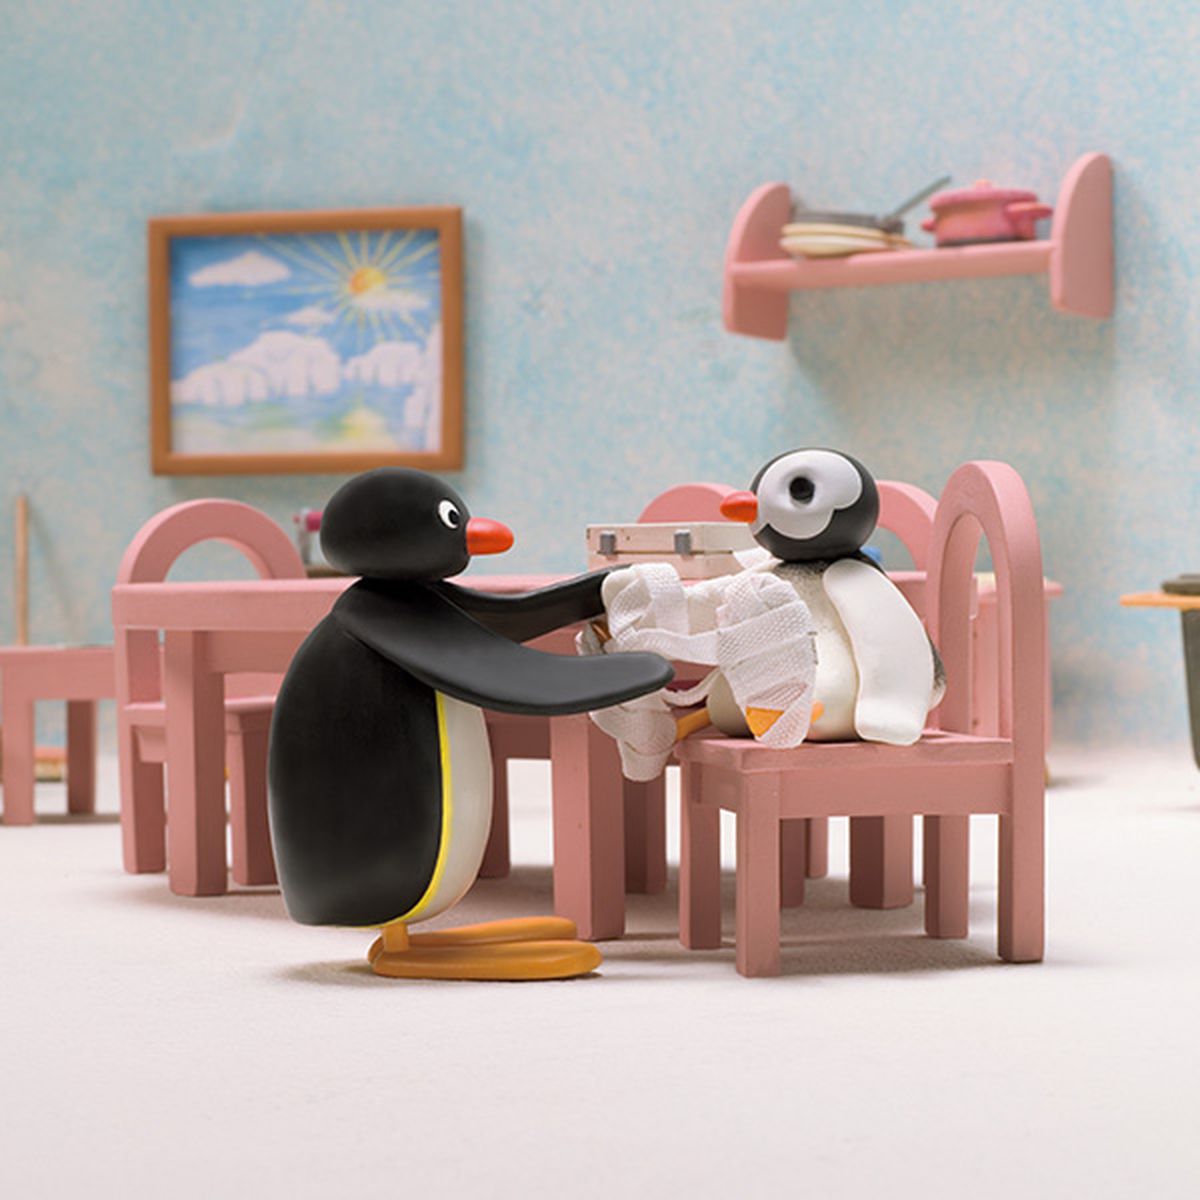 Le nouveau jeu de Pingu | 